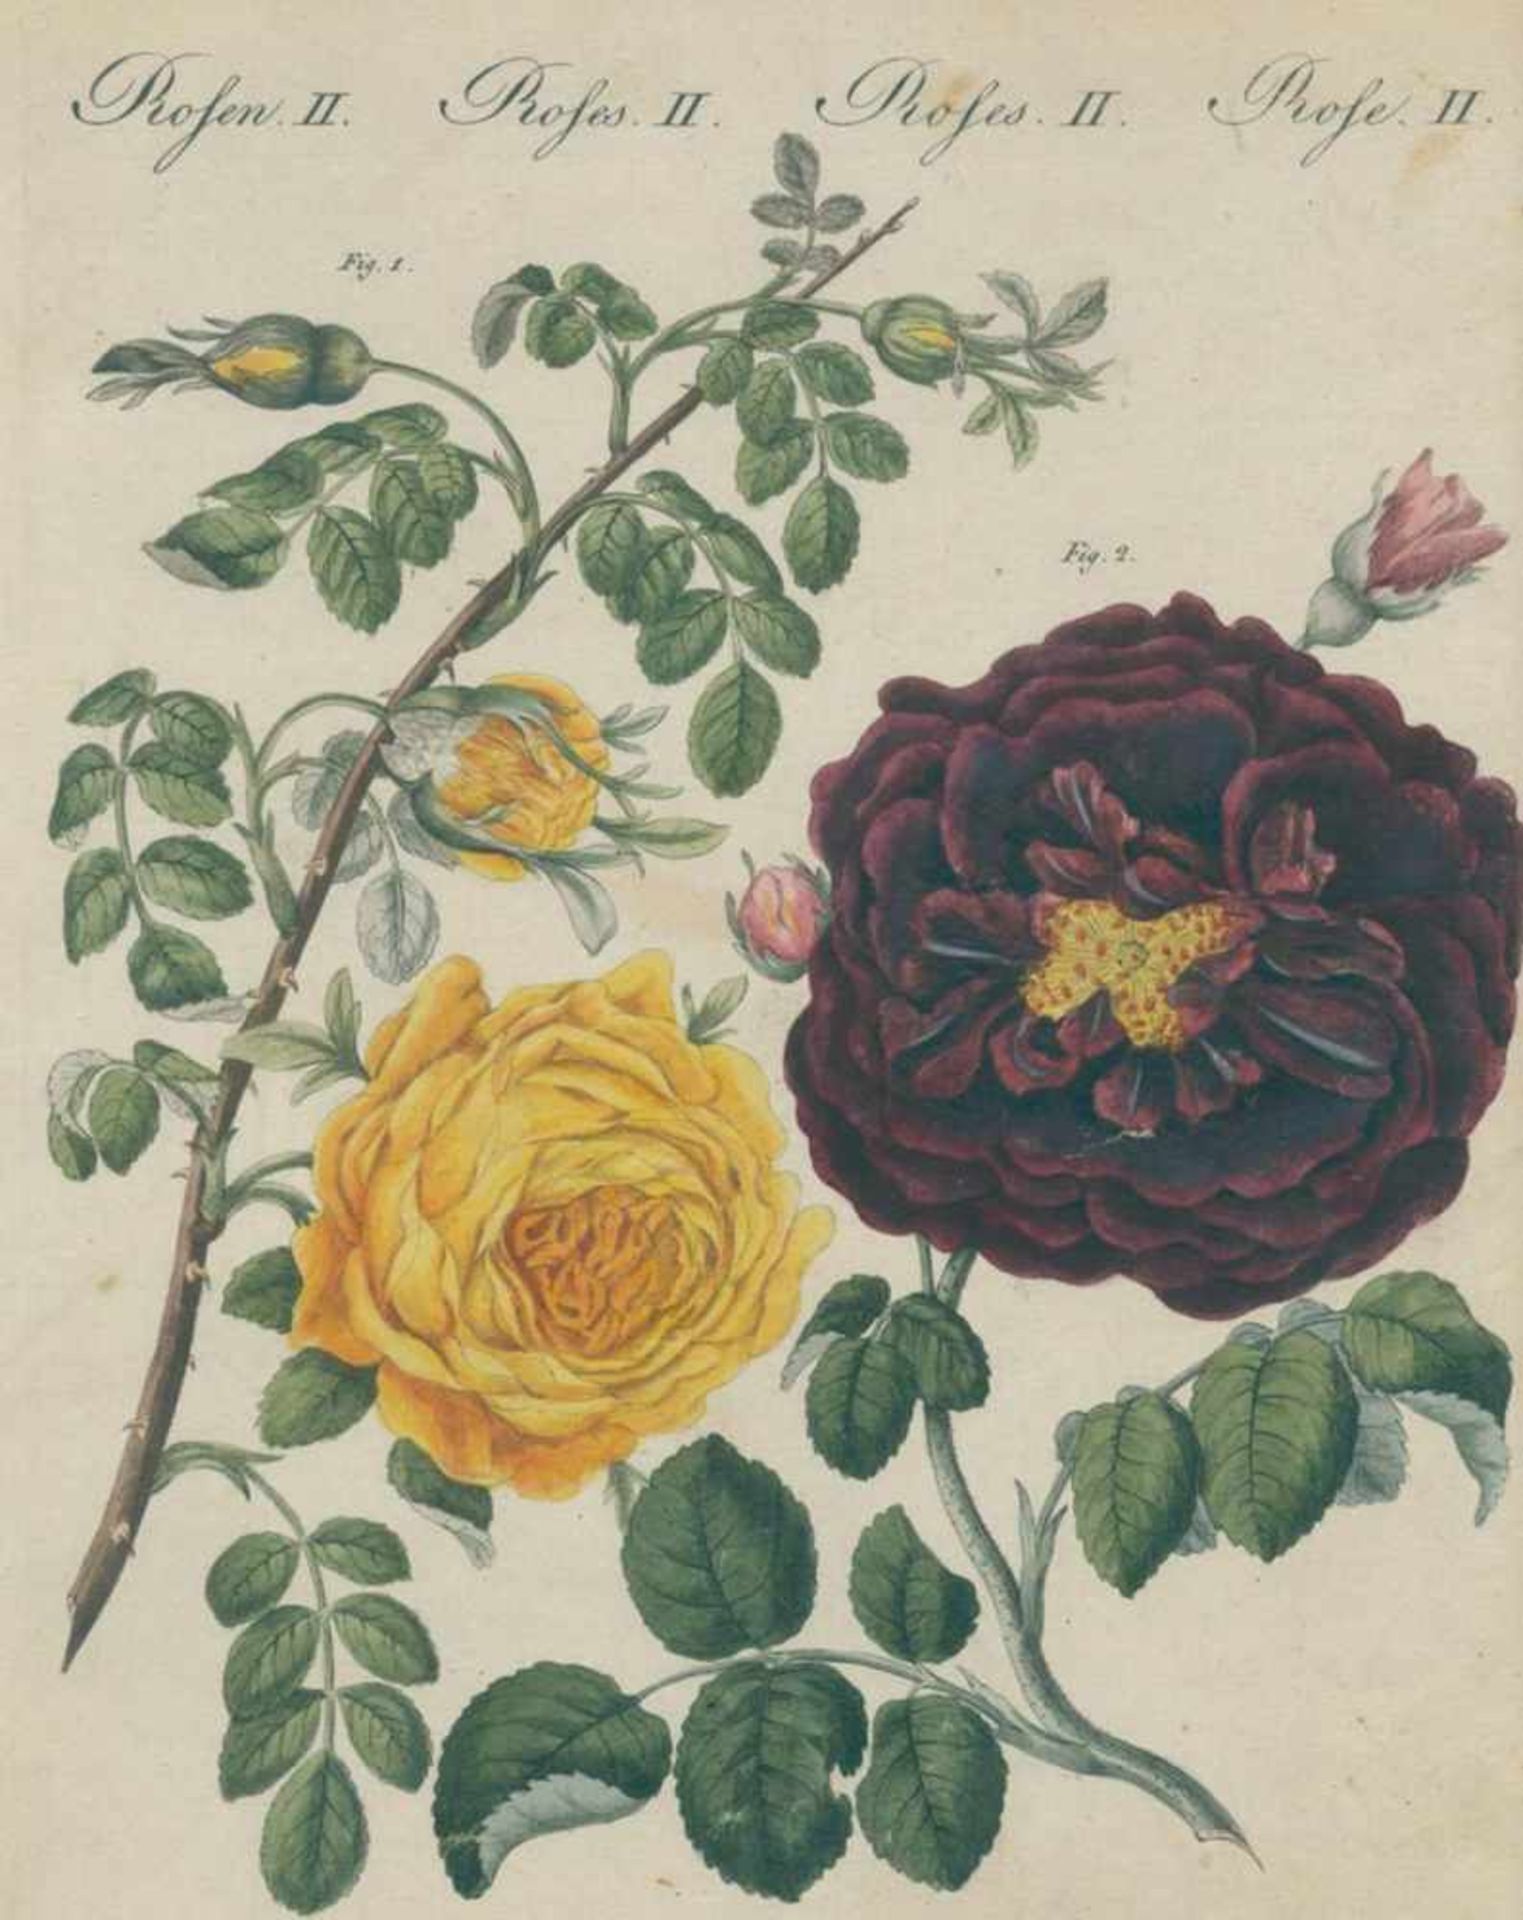 Rosen.Folge von 18 (num. I-XVIII) kolorierten Kupferstichen mit Rosendarstellungen aus dem